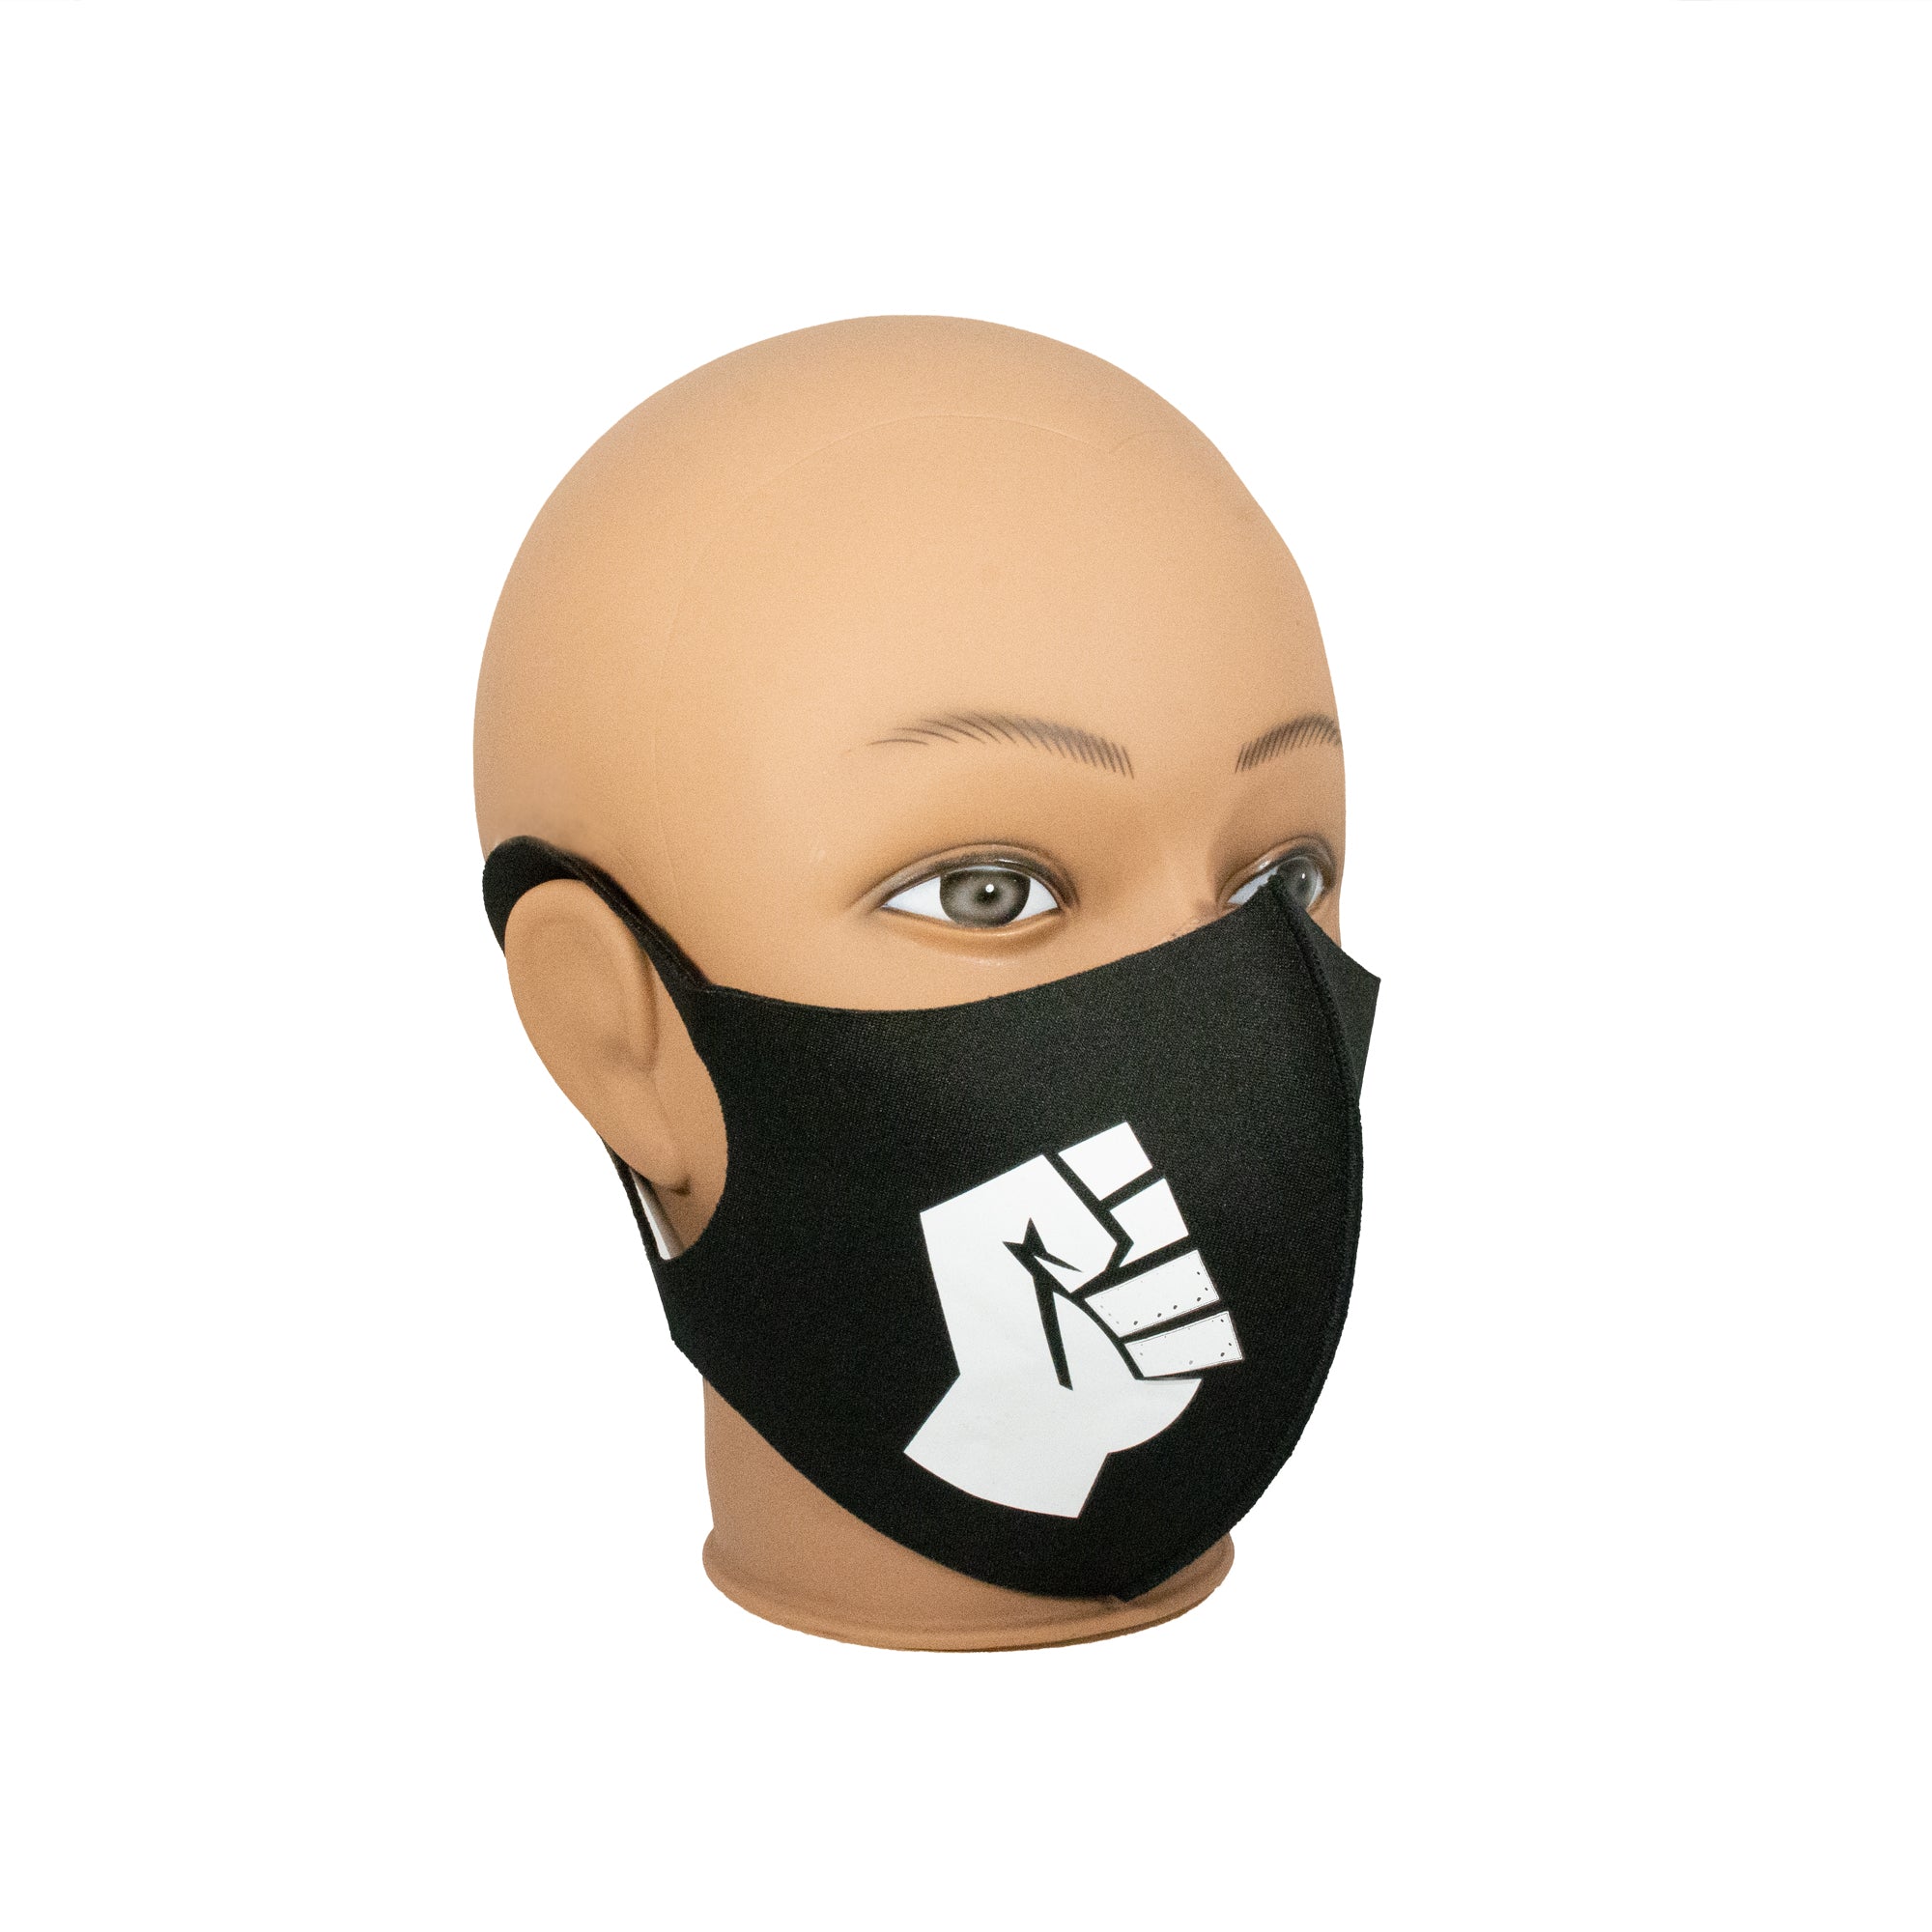 Black Lives Matter Fashion Mask 3pcs Pack